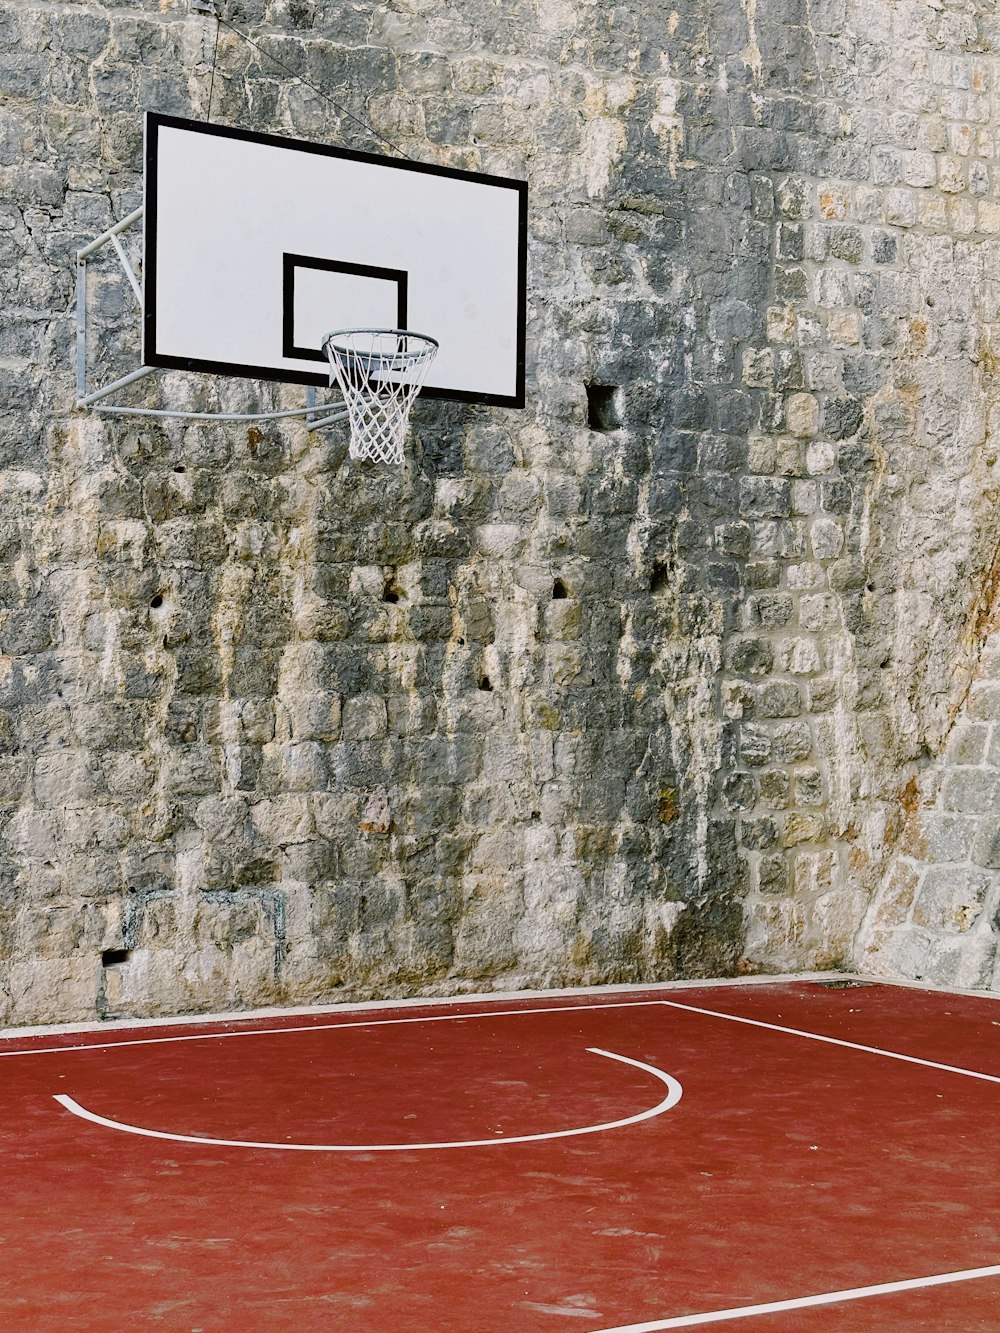 Ein Basketballplatz vor einer Ziegelmauer